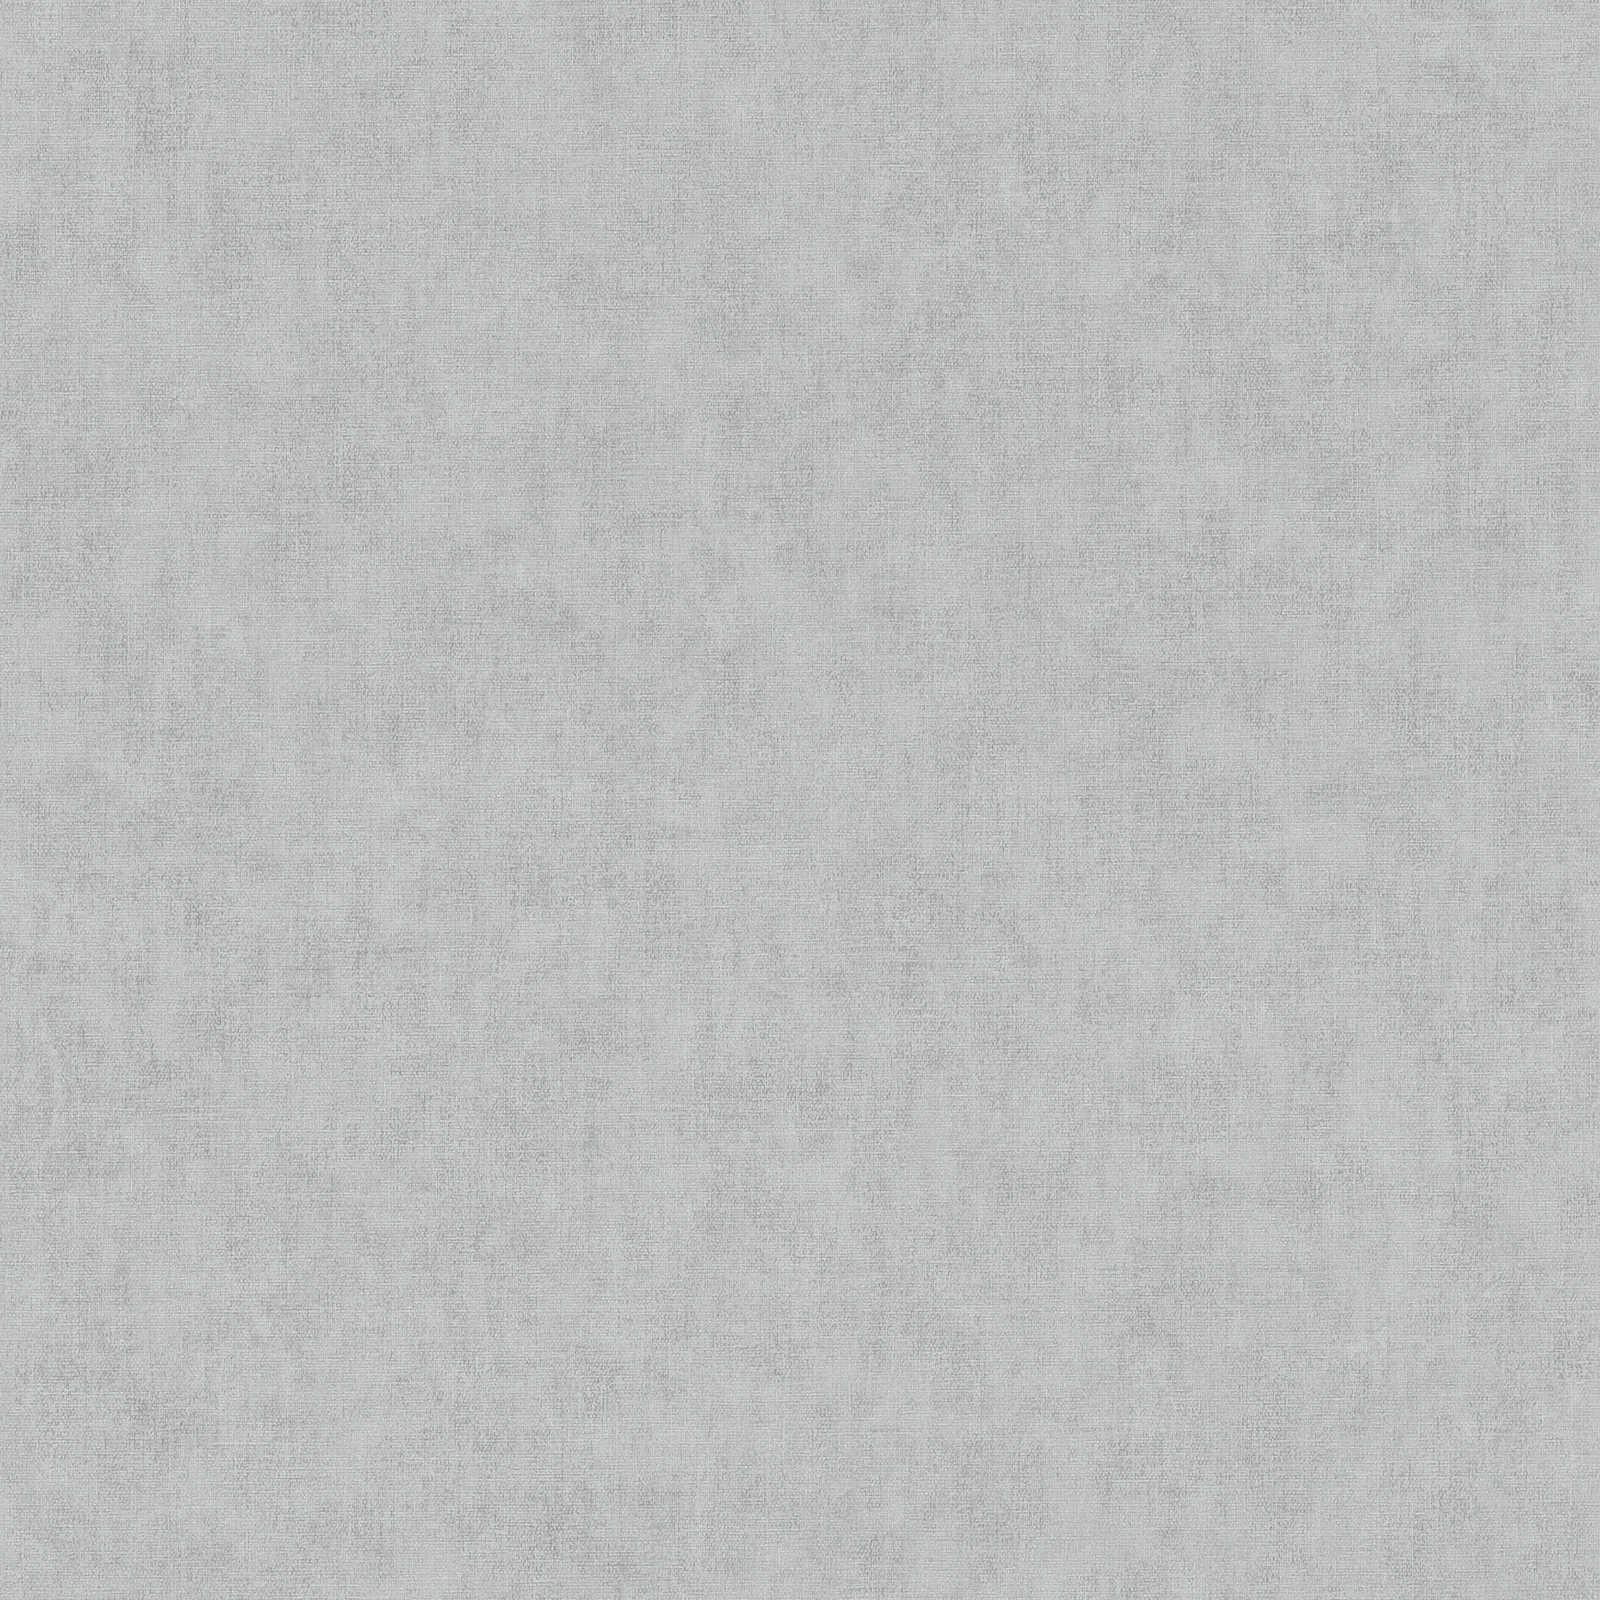 Carta da parati in tessuto non tessuto effetto lino con motivo sottile - grigio
